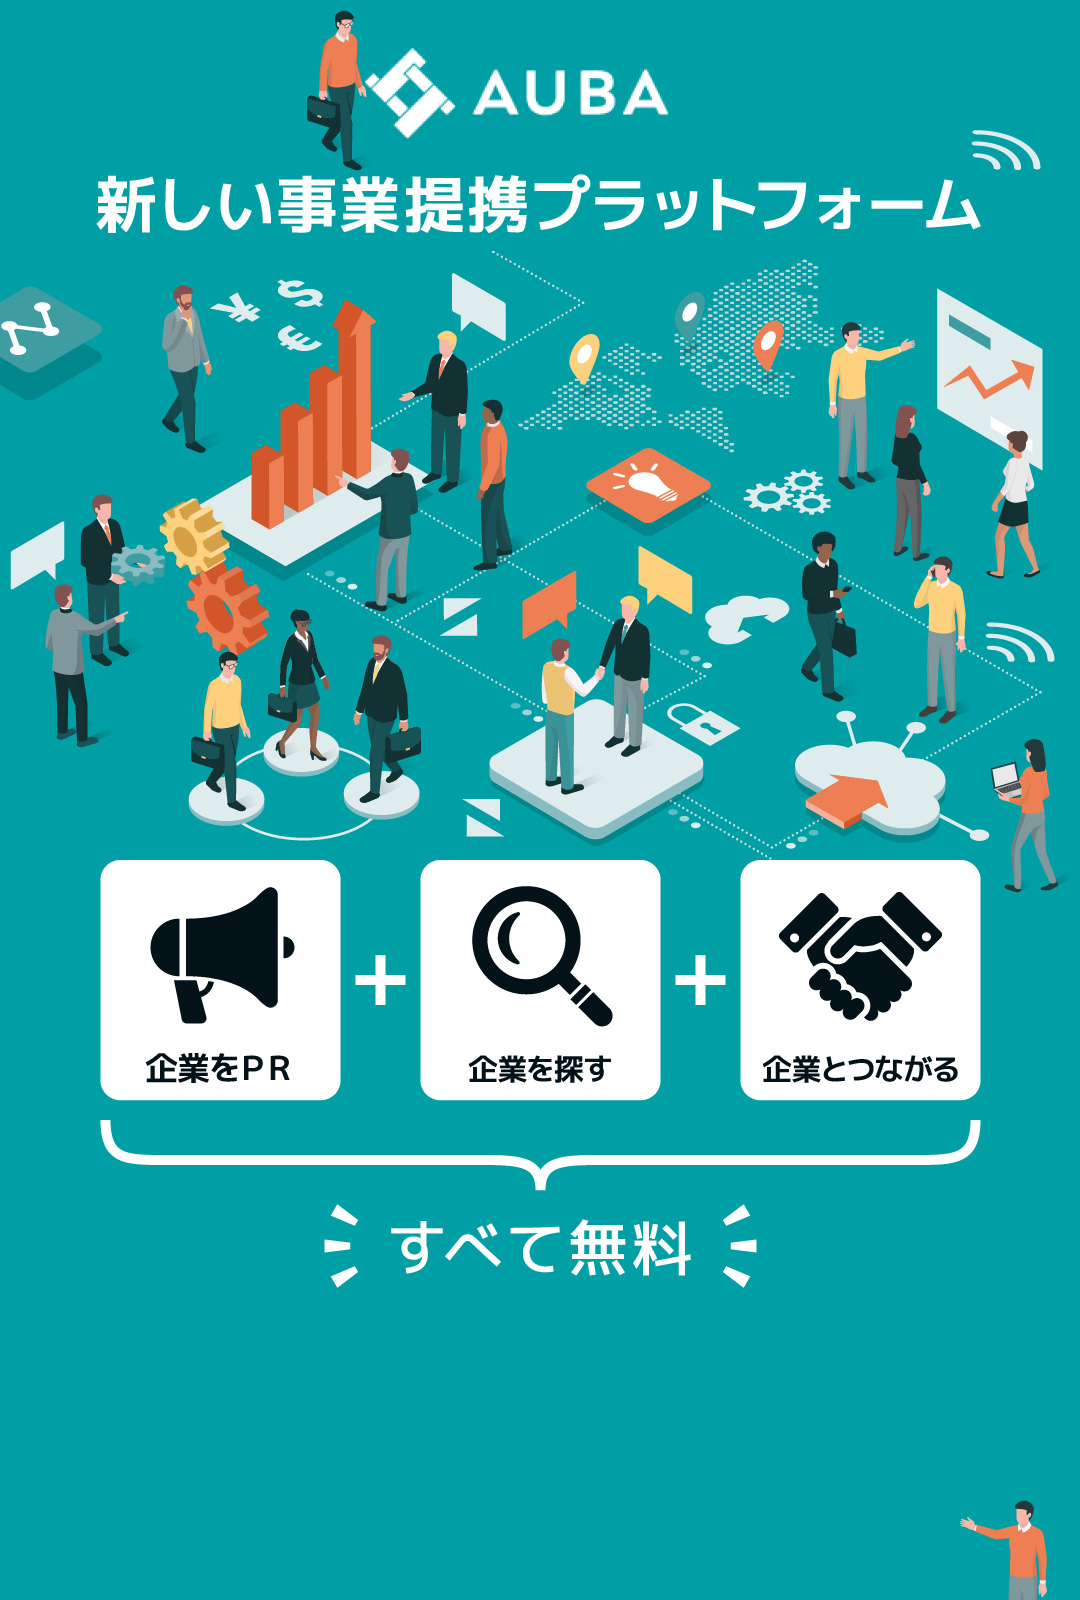 eicon 新しい事業提携プラットフォーム 企業をＰＲ 企業を探す 企業とつながる すべて無料 事業をPRして、企業と企業がつながる。日本最大級のオープンイノベーションプラットフォーム。